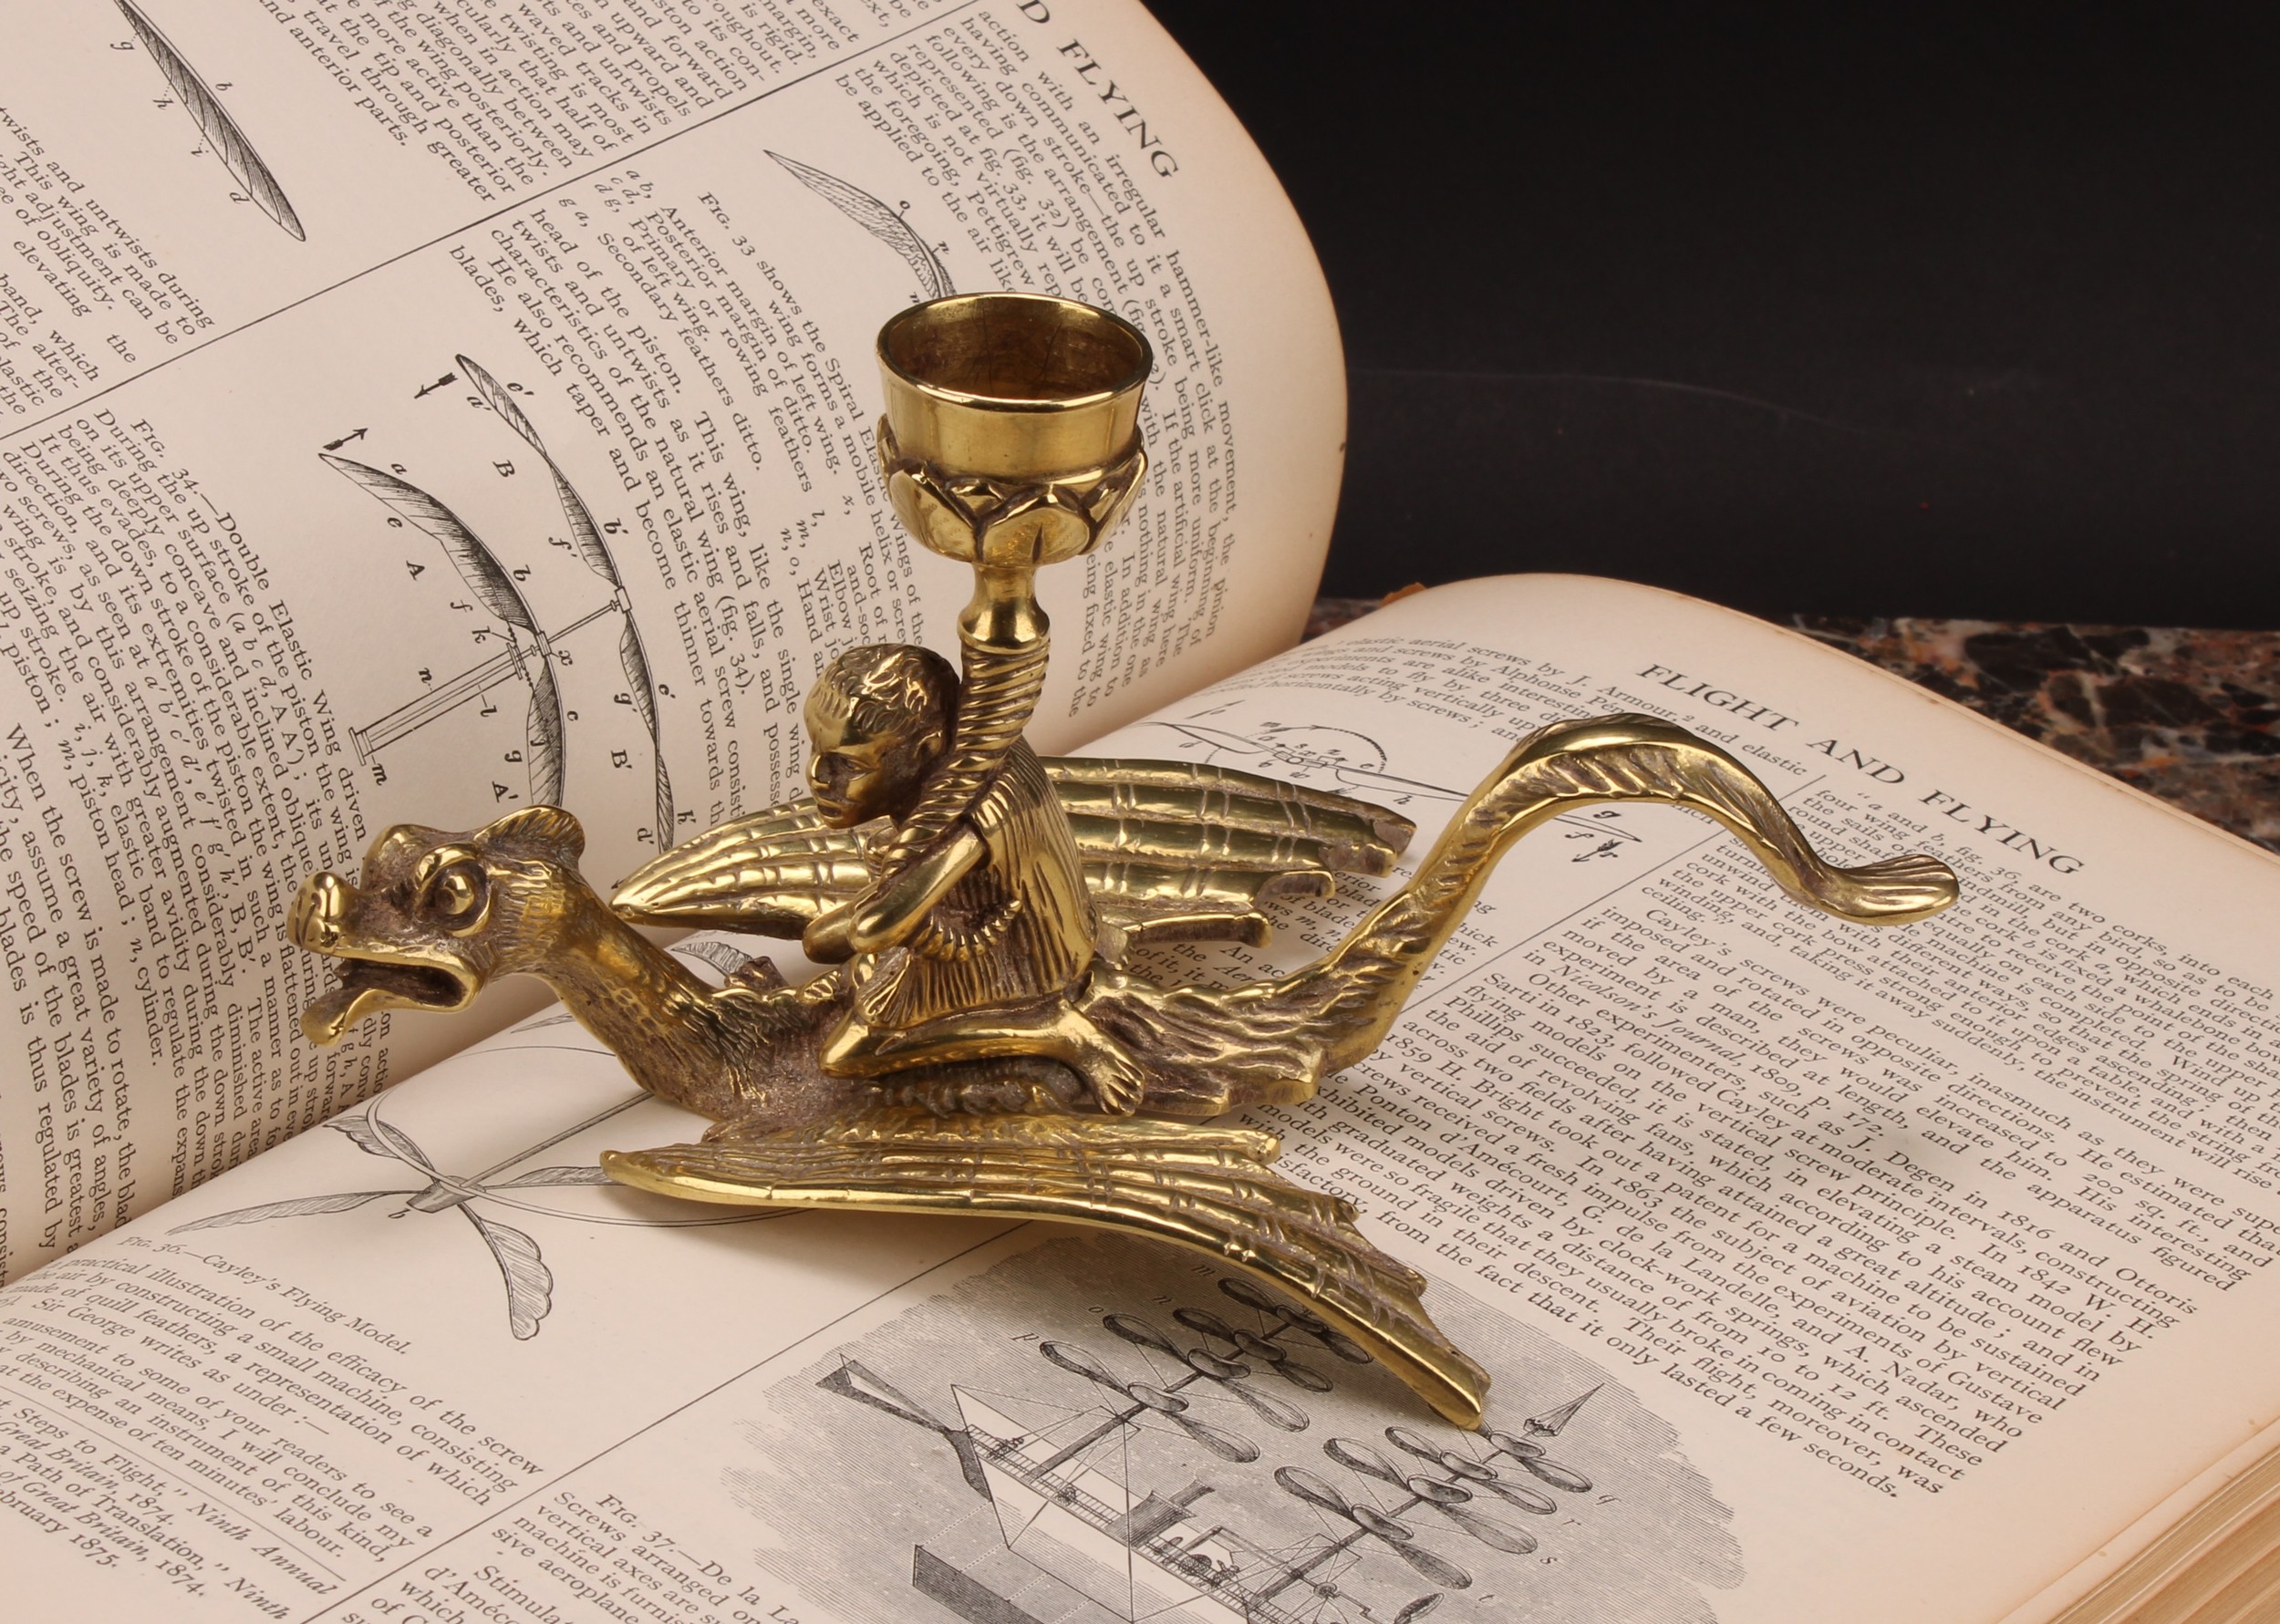 A 19th century brass chamberstick, cast as a figure riding a dragon, 9cm high